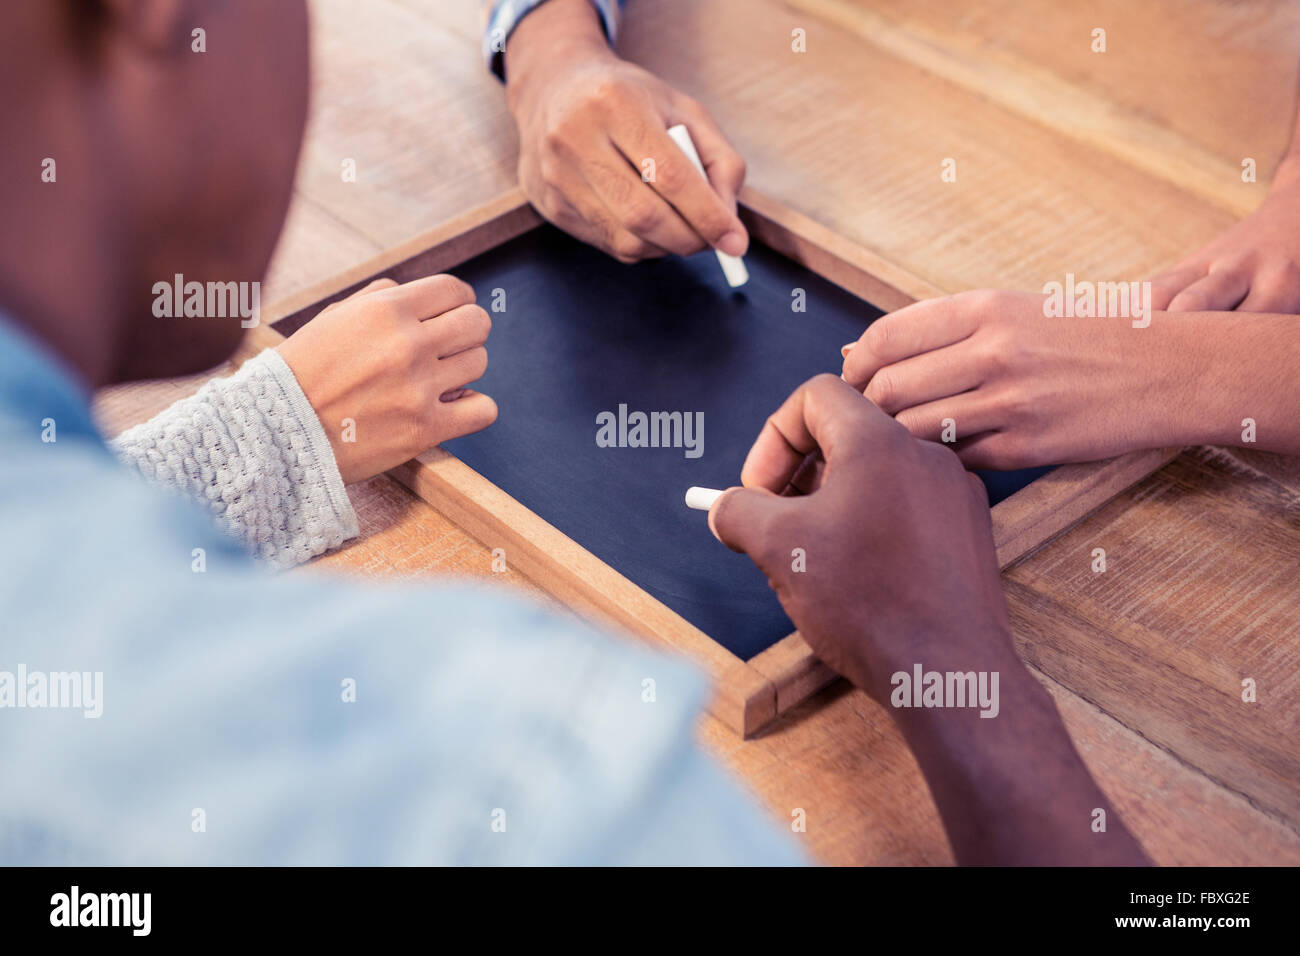 Hände von Geschäftsleuten schreiben auf Schiefertafel am Schreibtisch beschnitten Stockfoto